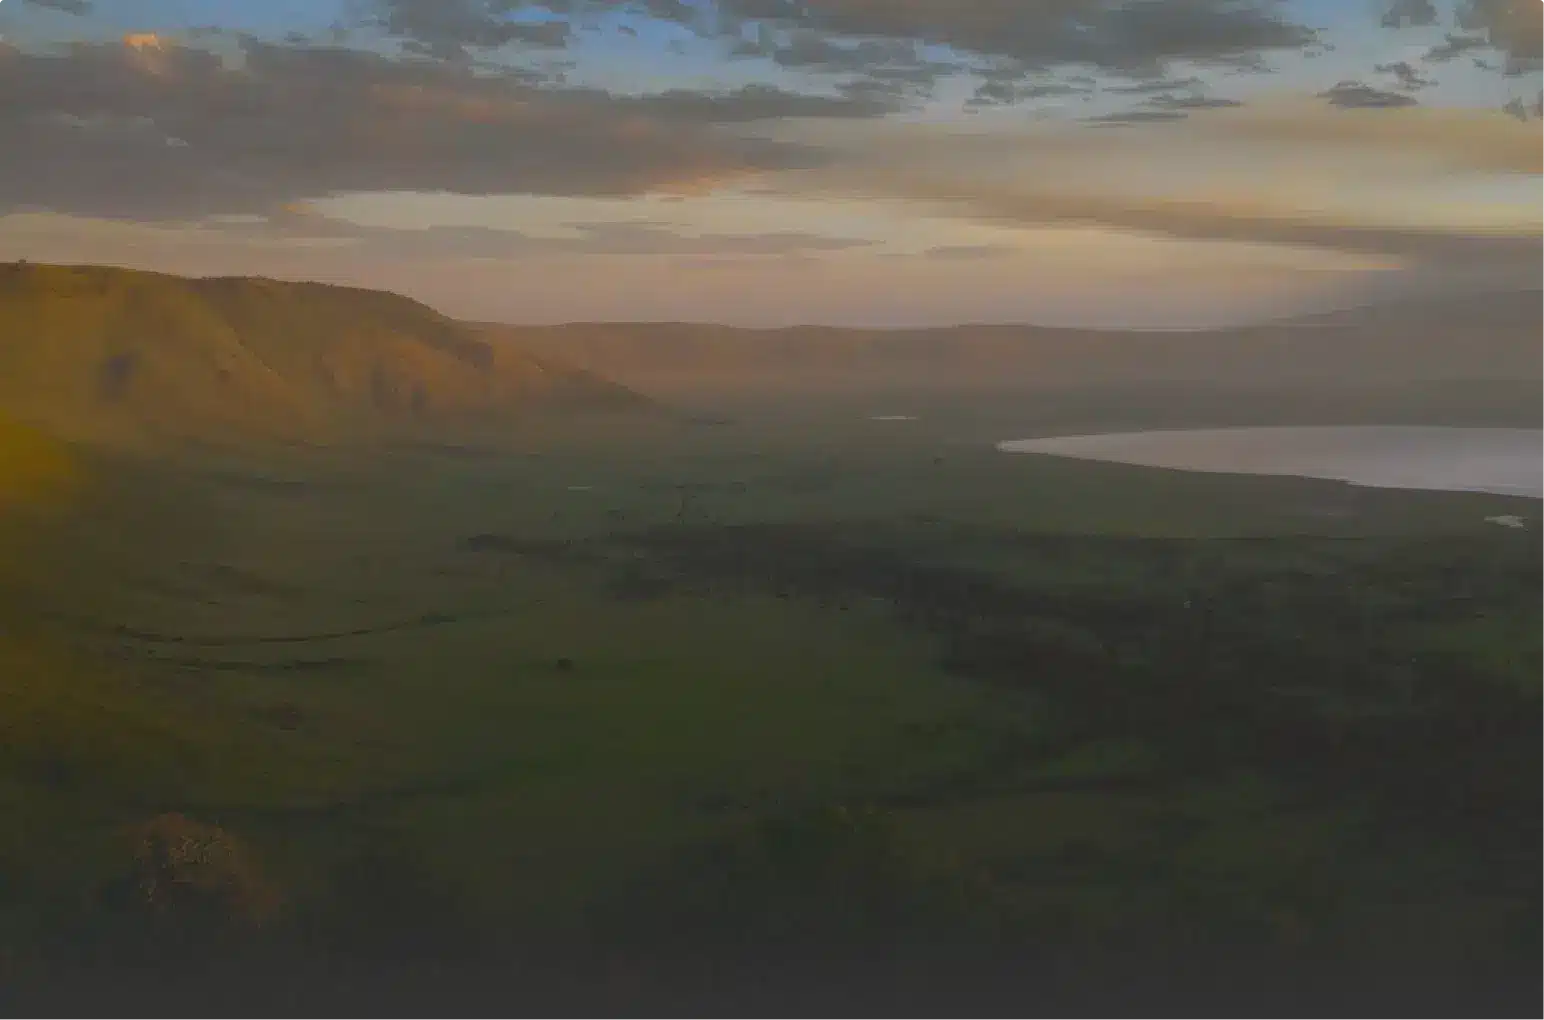 Ngorongoro - ngorongoro wonderland: a glimpse into the cradle of wildlife